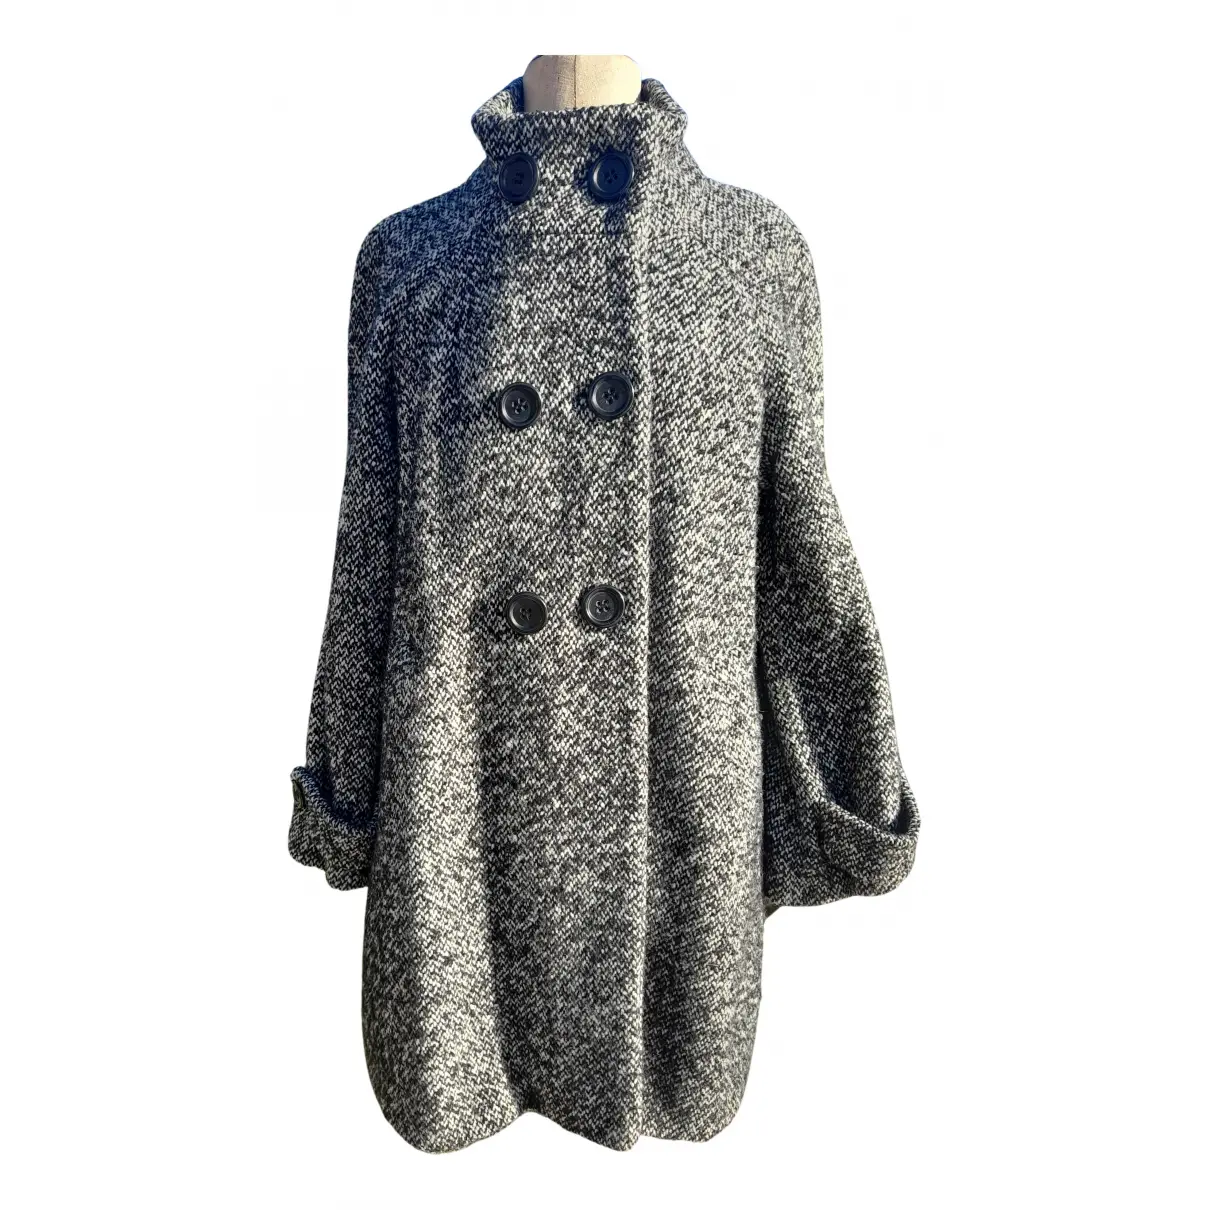 Wool coat Gerard Darel